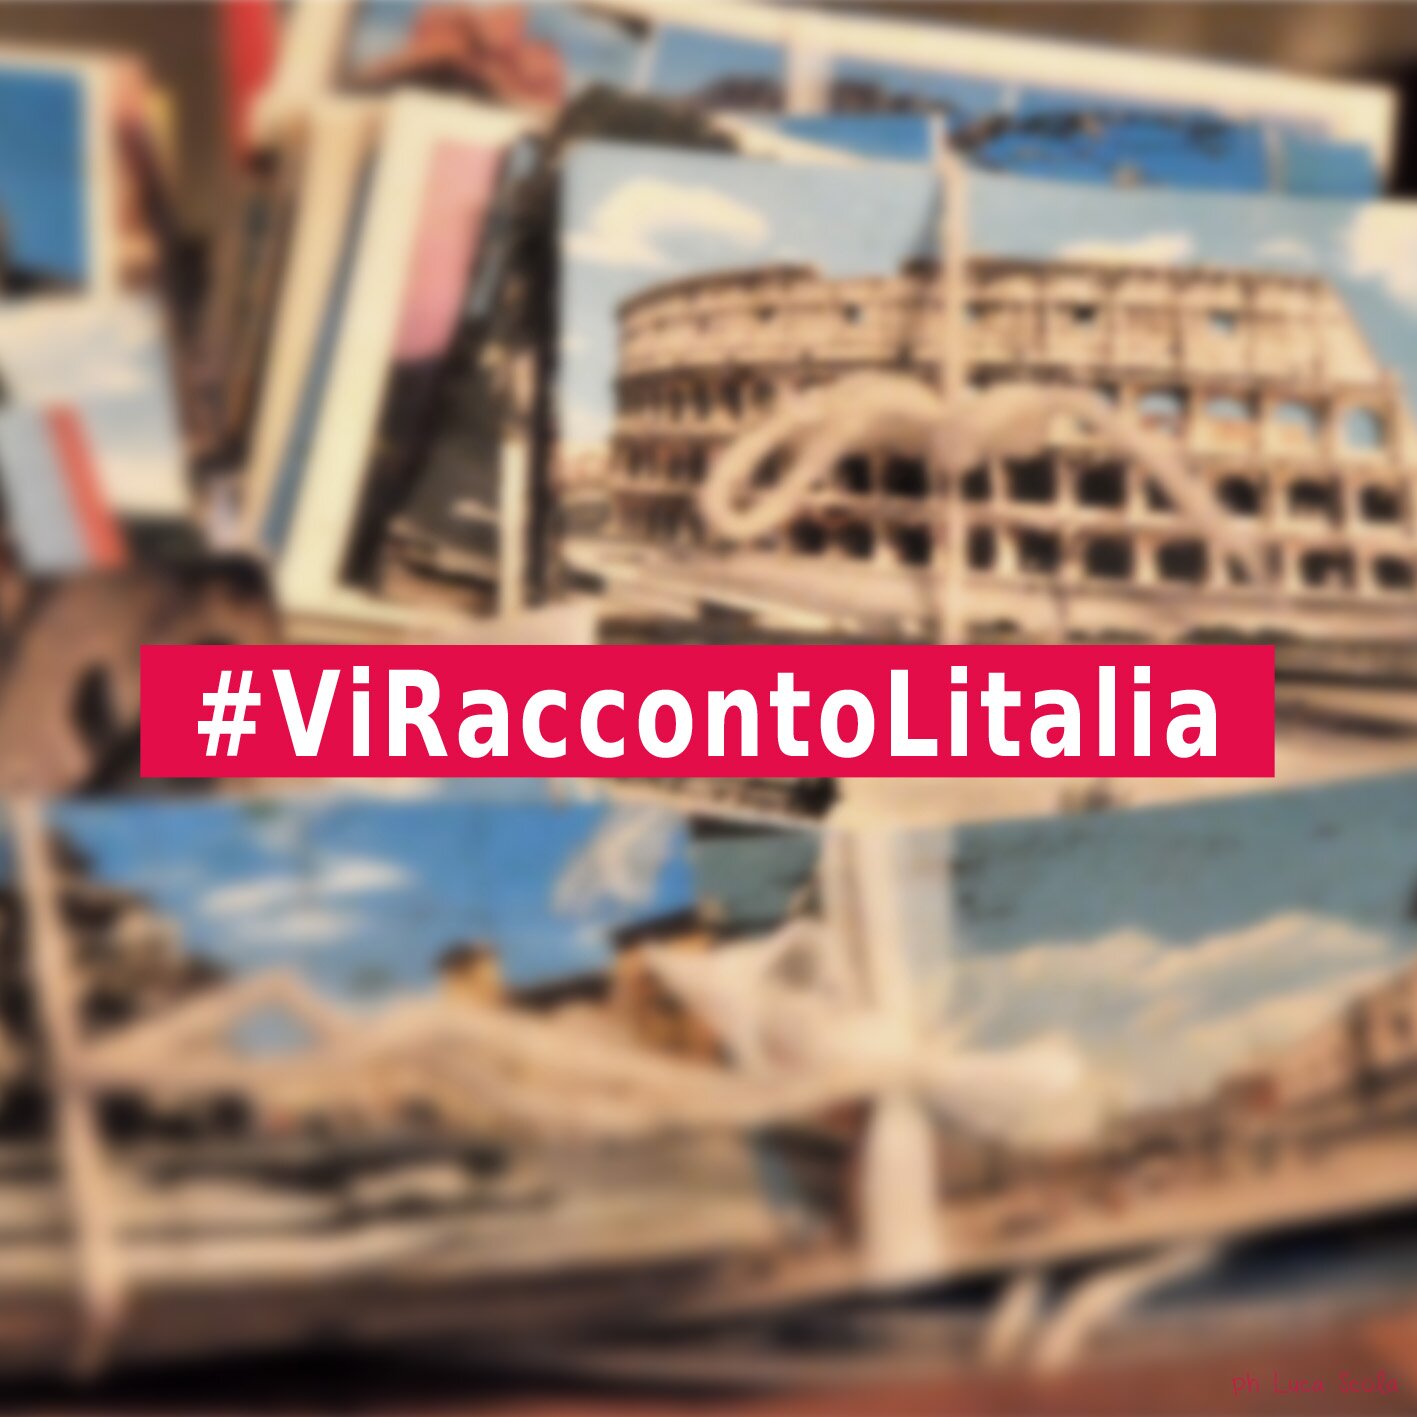 Molto di più di un semplice hashtag!
Raccontiamo il Paese più bello del mondo, fatelo con noi! Con le VOSTRE foto, e con l'hashtag #ViRaccontoLitalia.